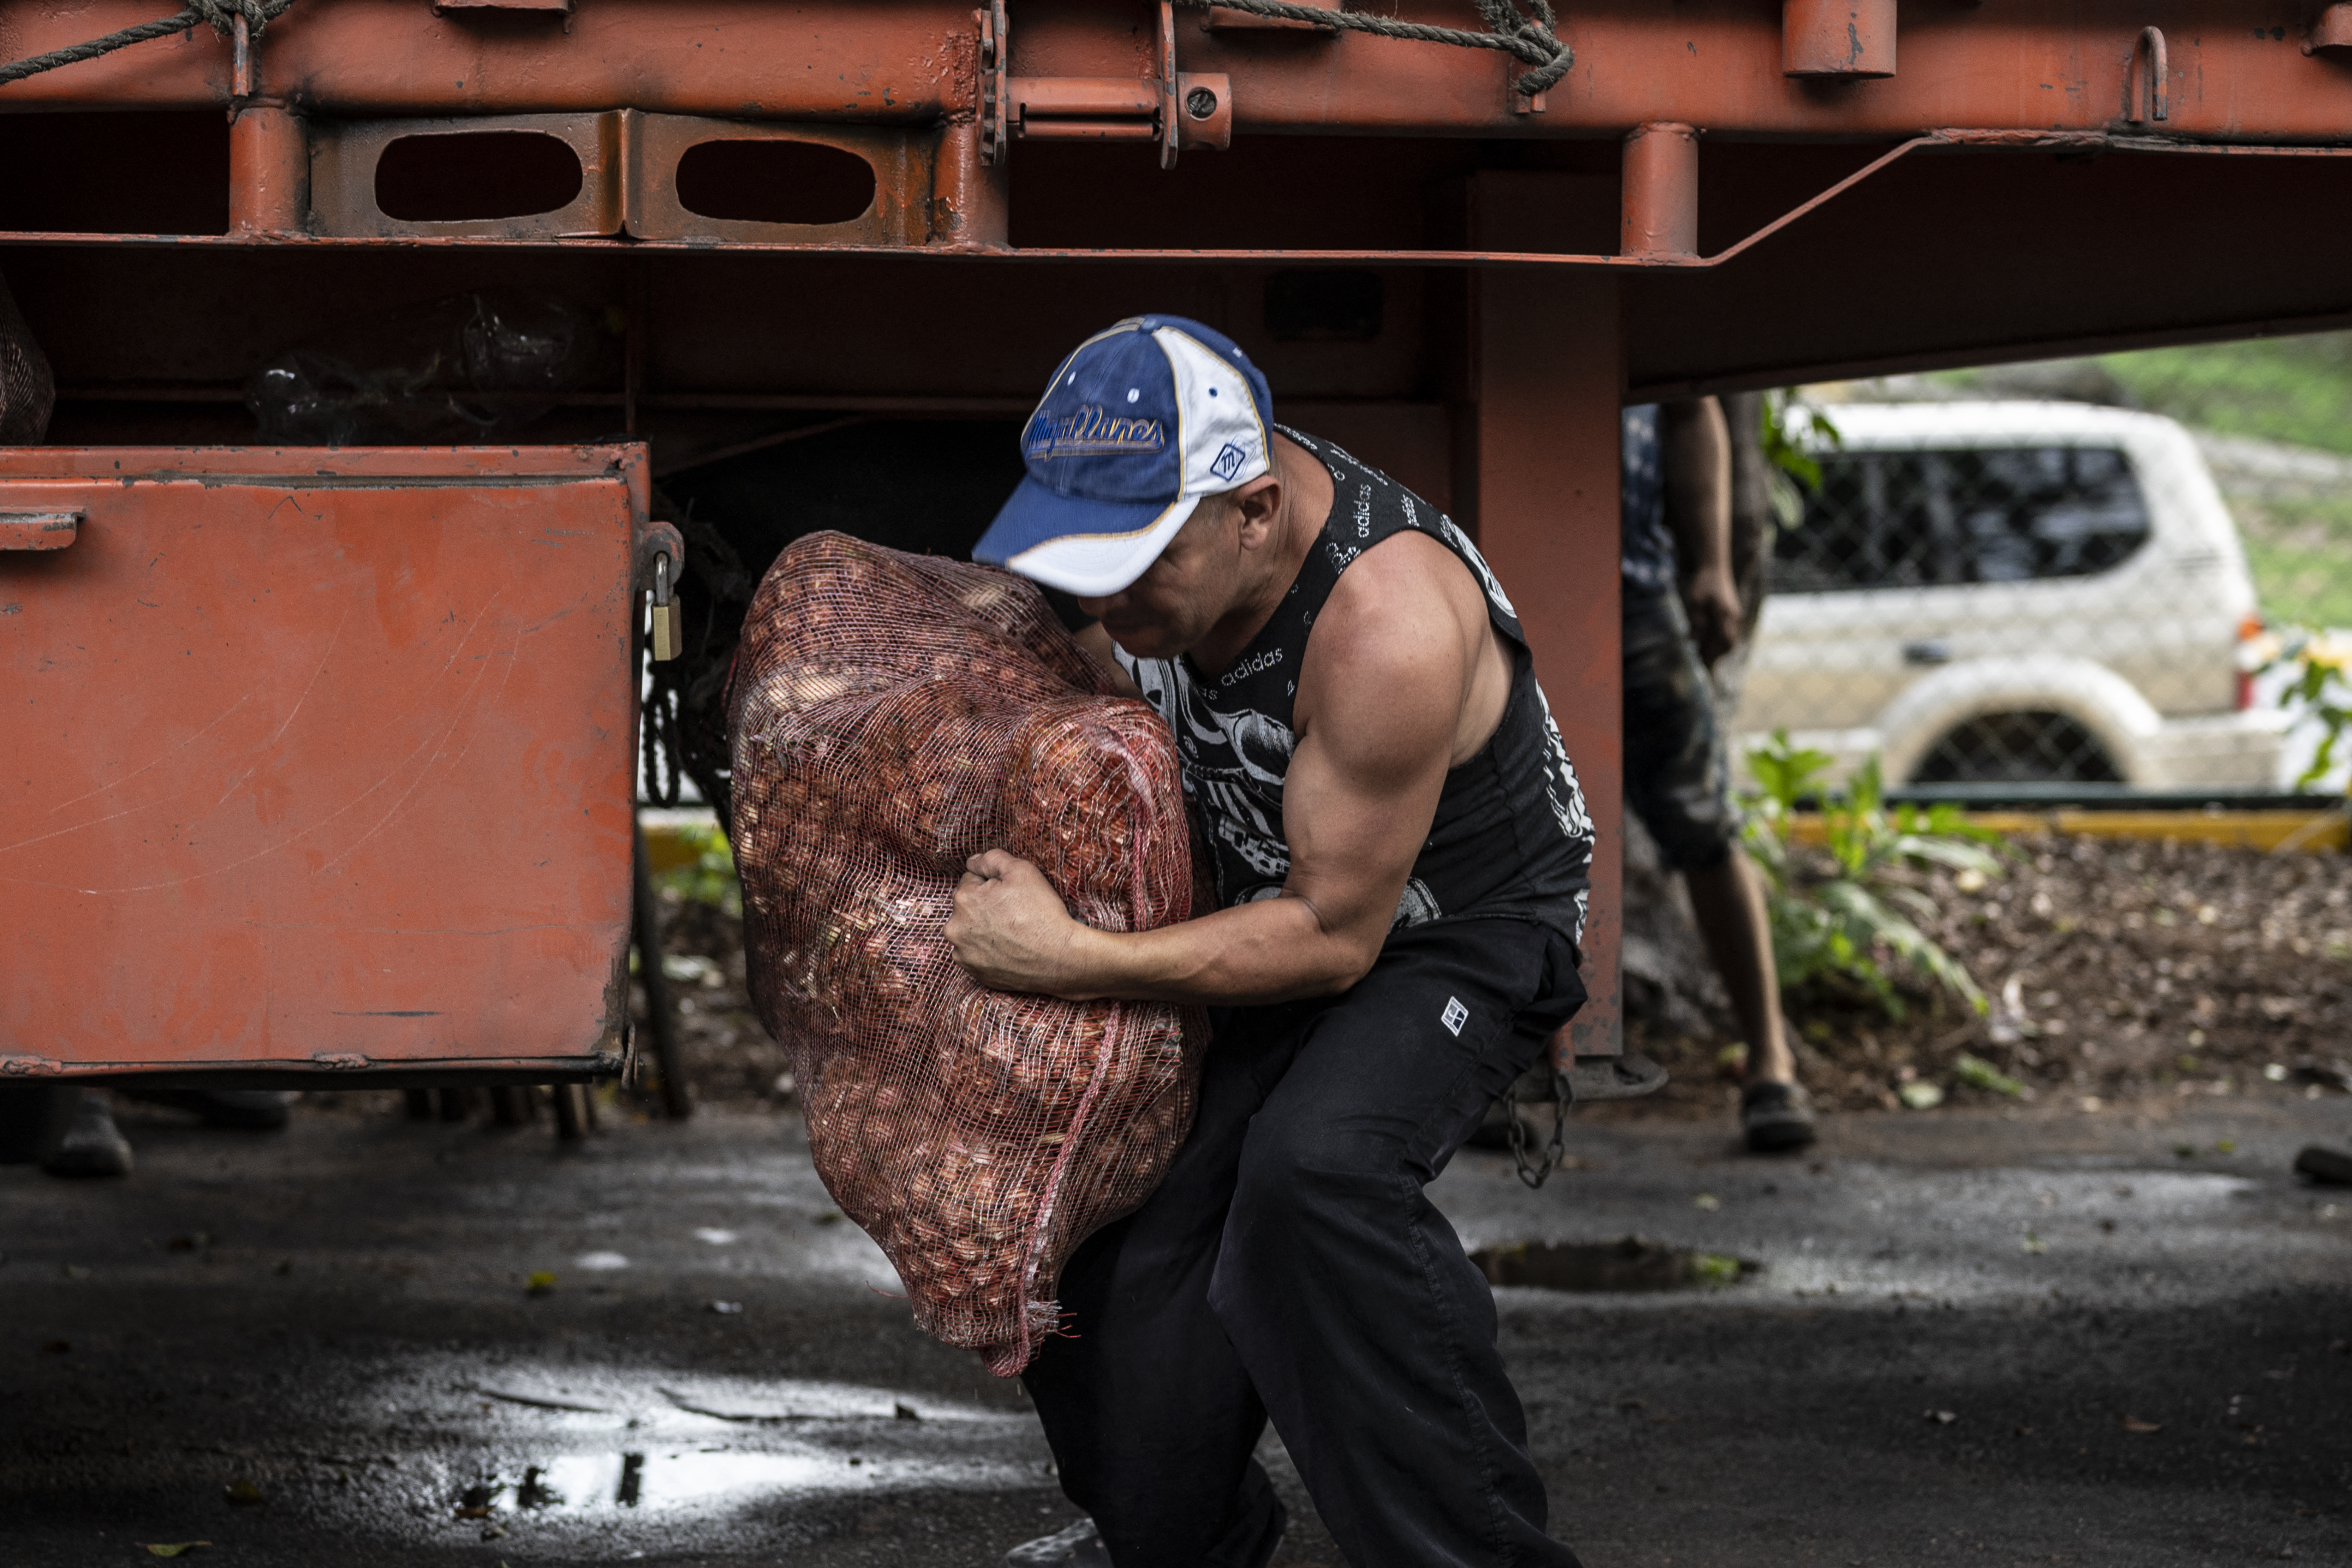 Crisis amenaza con dejar 14 millones latinoamericanos sin acceso a alimentos